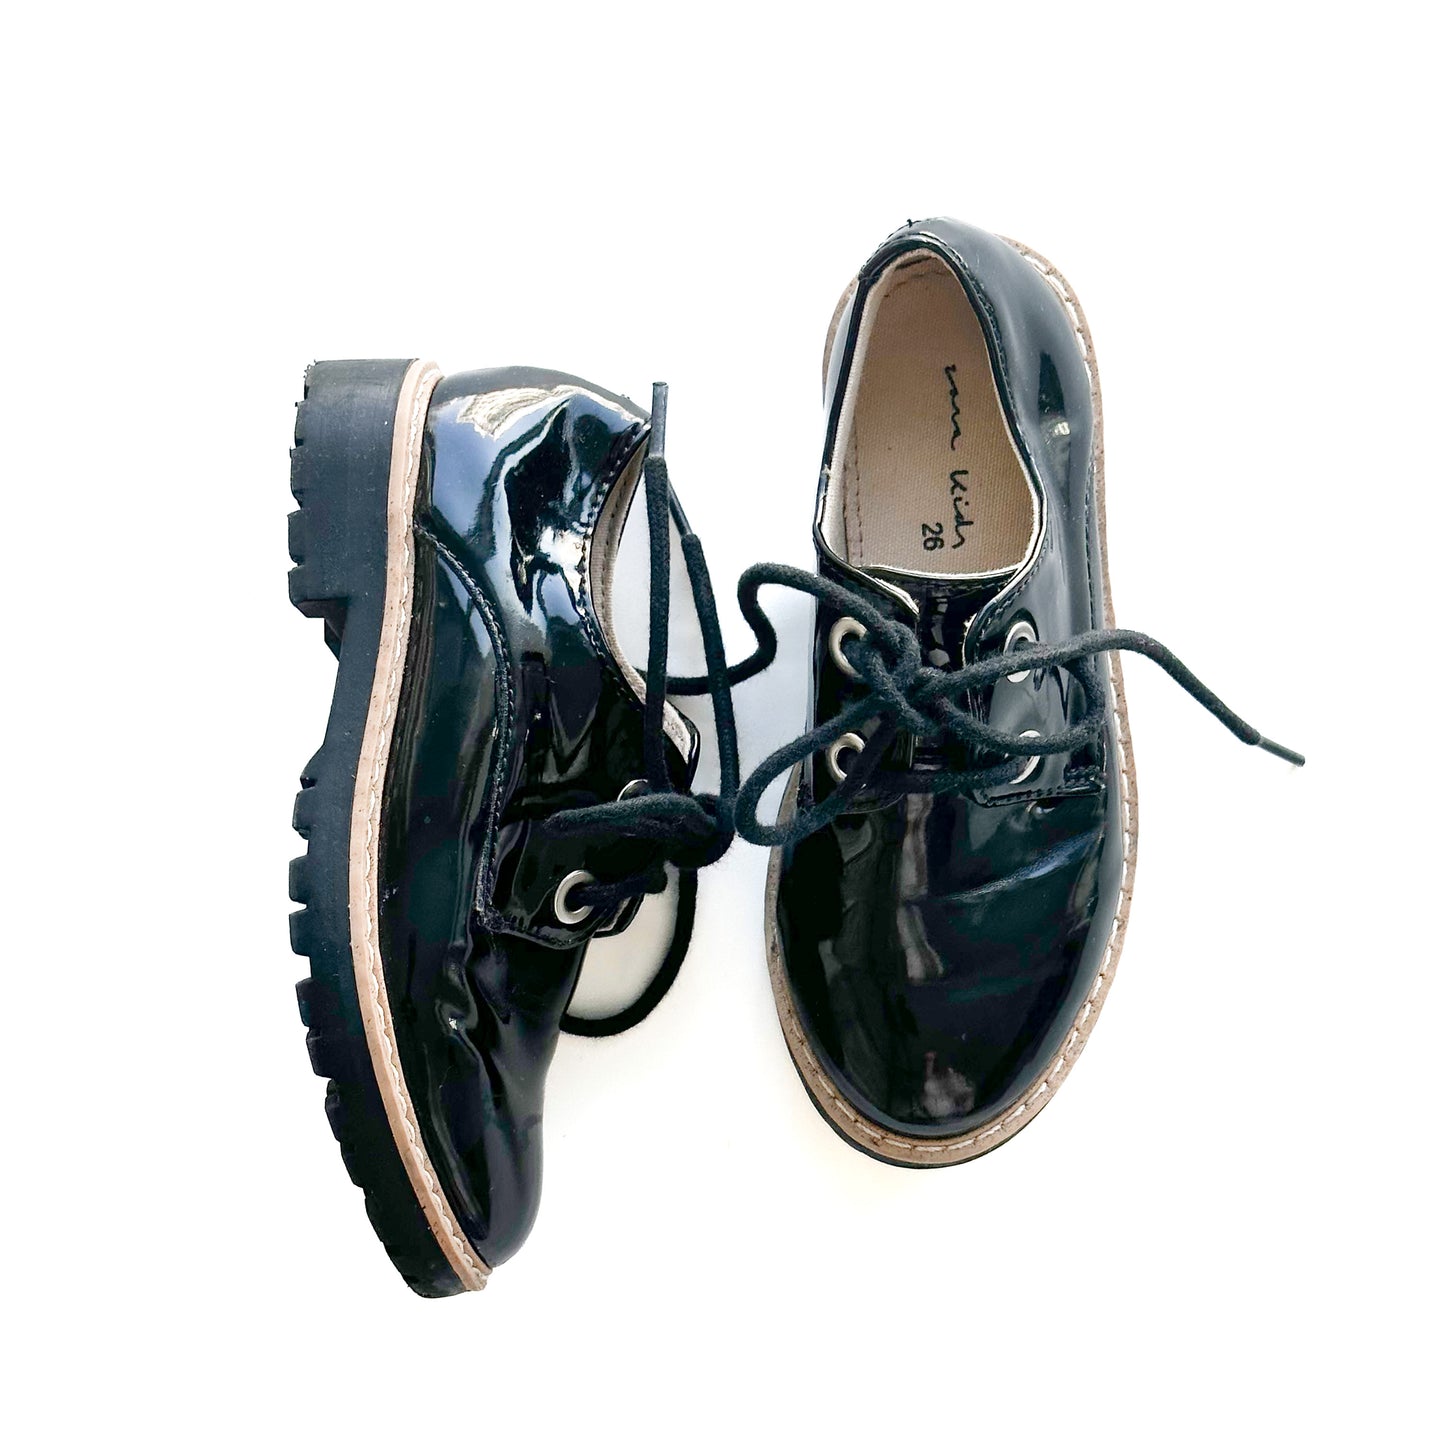 [EU26] Zara Kids Lace-up Shoes- Patent finish